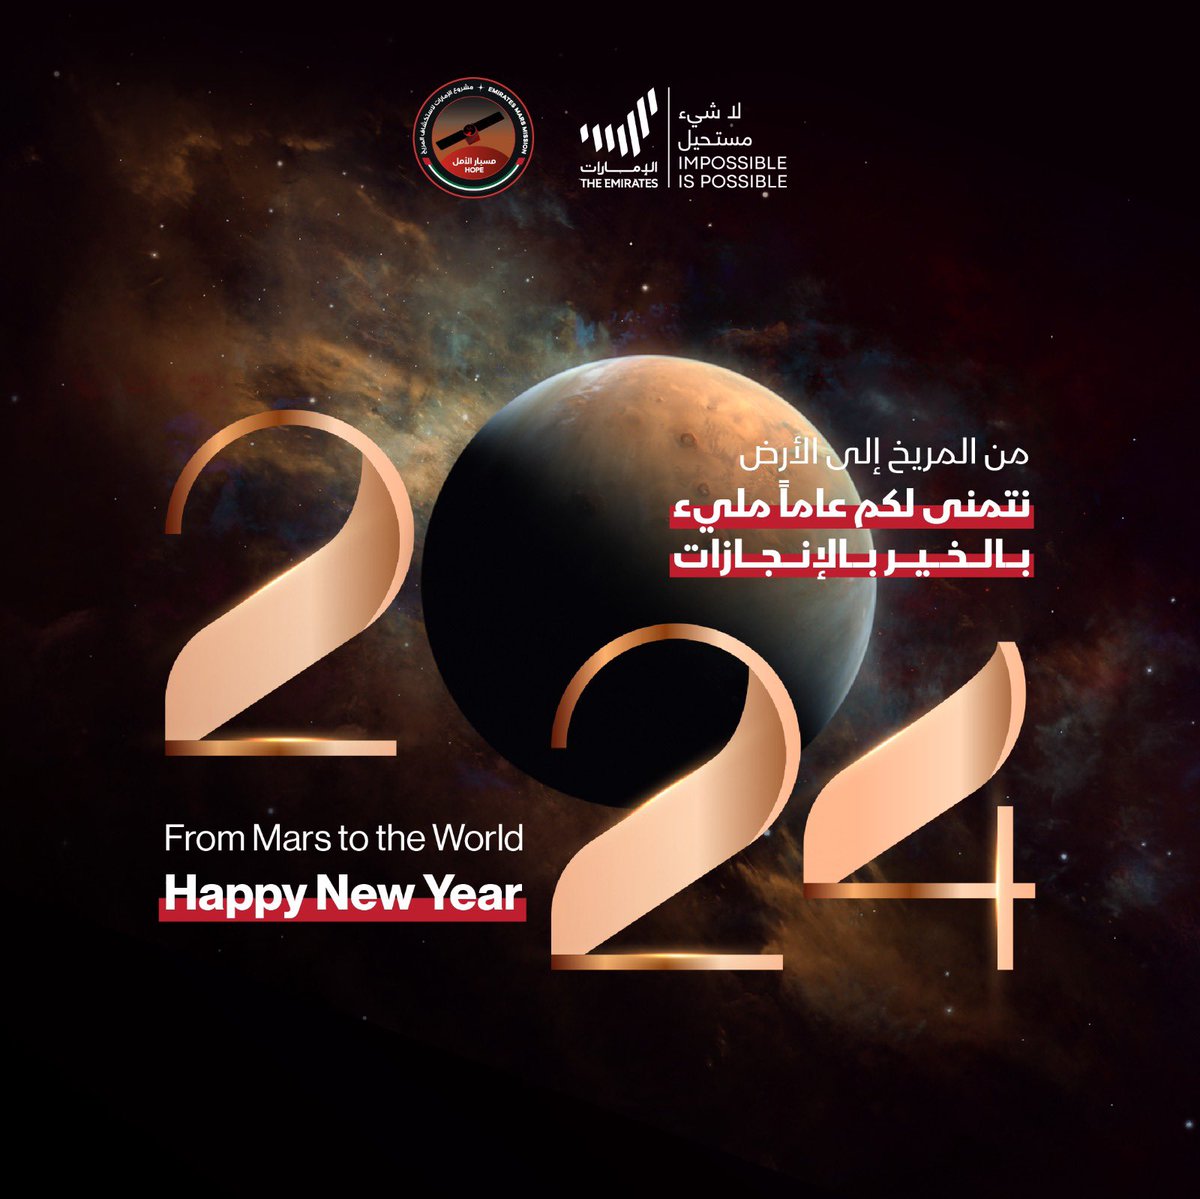 نستقل العام الجديد ونحمل أمالاً كبيرة لتحقيق إنجازات مميزة وكشف المزيد من الأسرار عن الكوكب الأحمر. يتمنى لكم فريق مشروع الإمارات لاستكشاف المريخ سنة جديدة مليئة بالسعادة والنجاح والأمل.